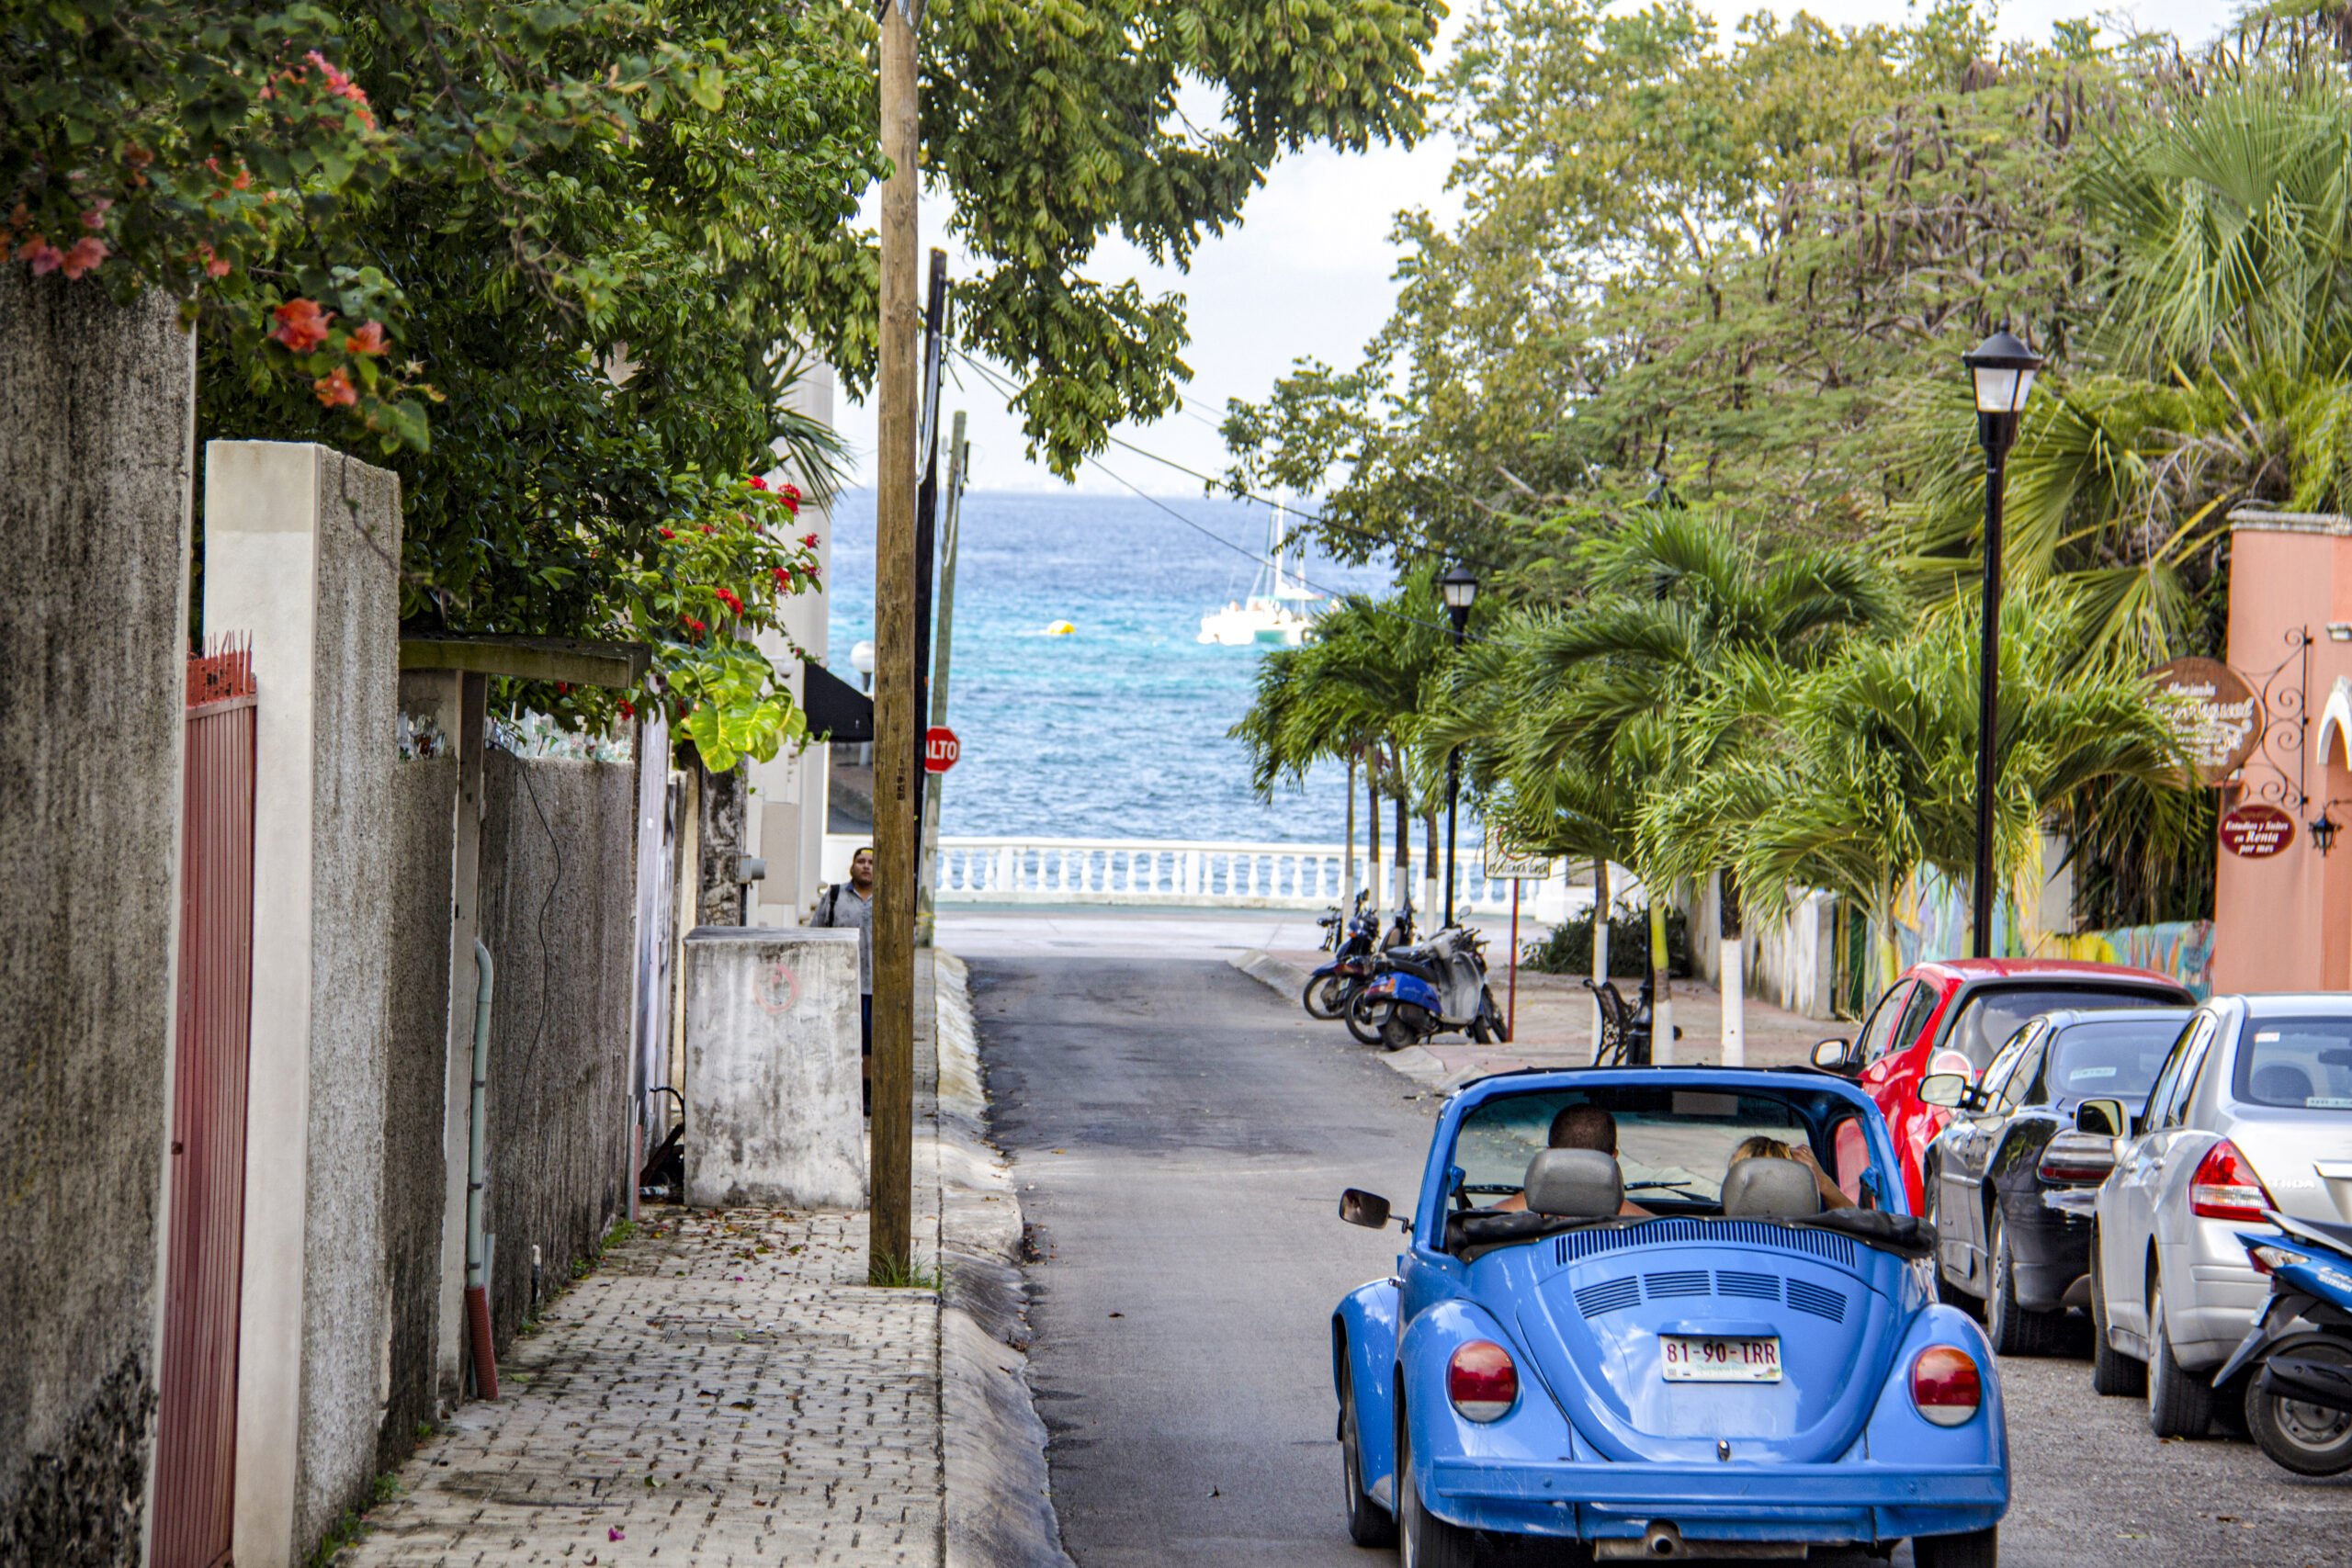 Imagen de Cozumel, carretera, malecon y mar caribe de cozumel de fondo